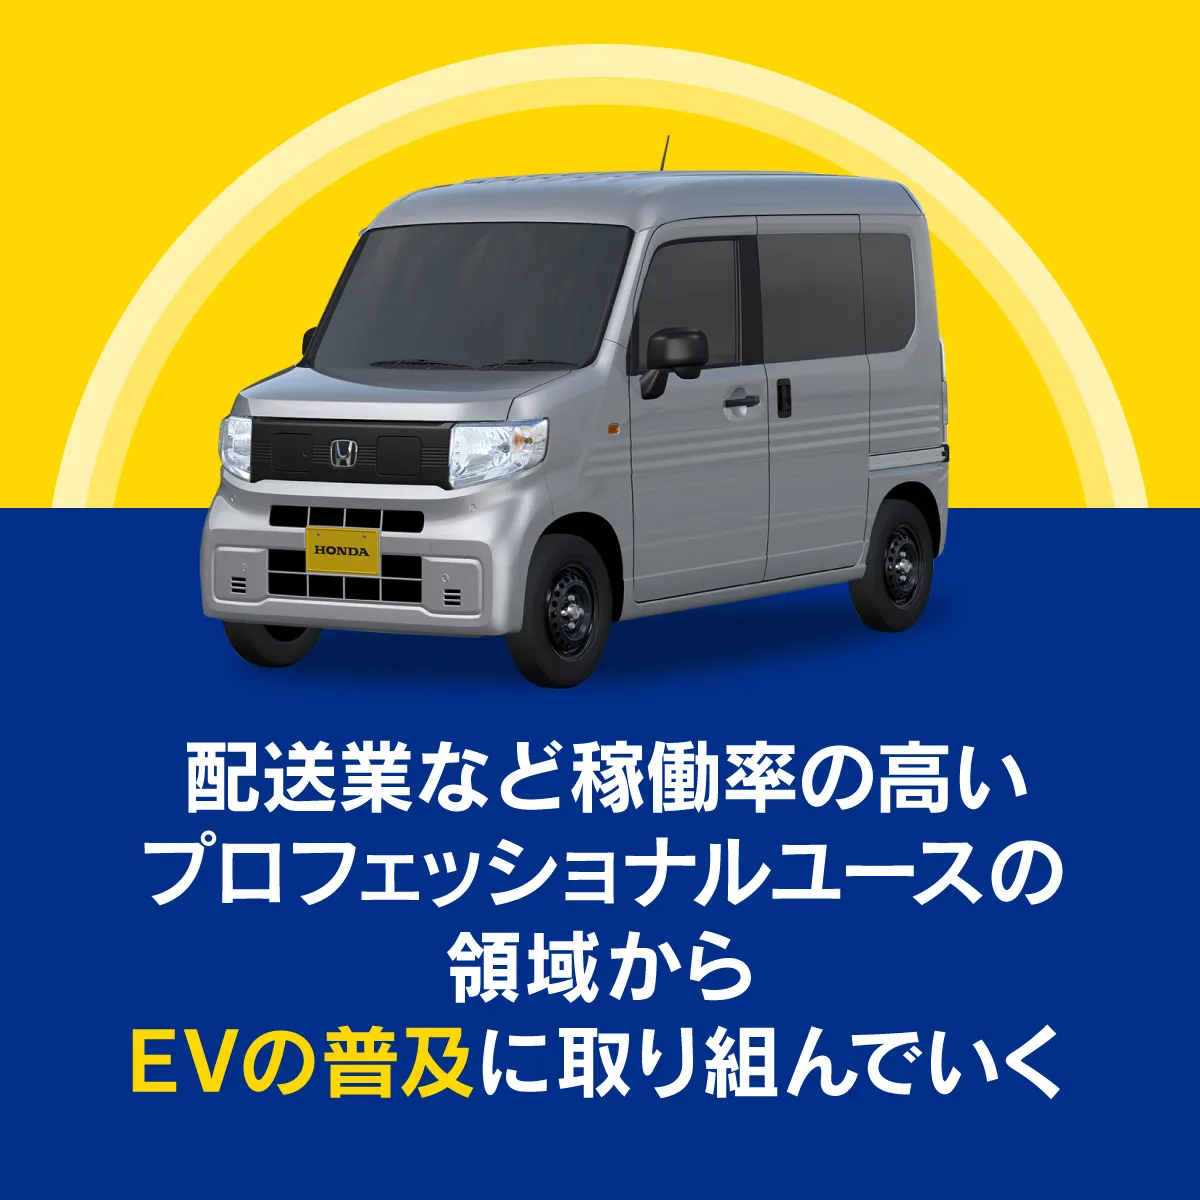 日本では、プロフェッショナルユースの領域からEVの普及に取り組む